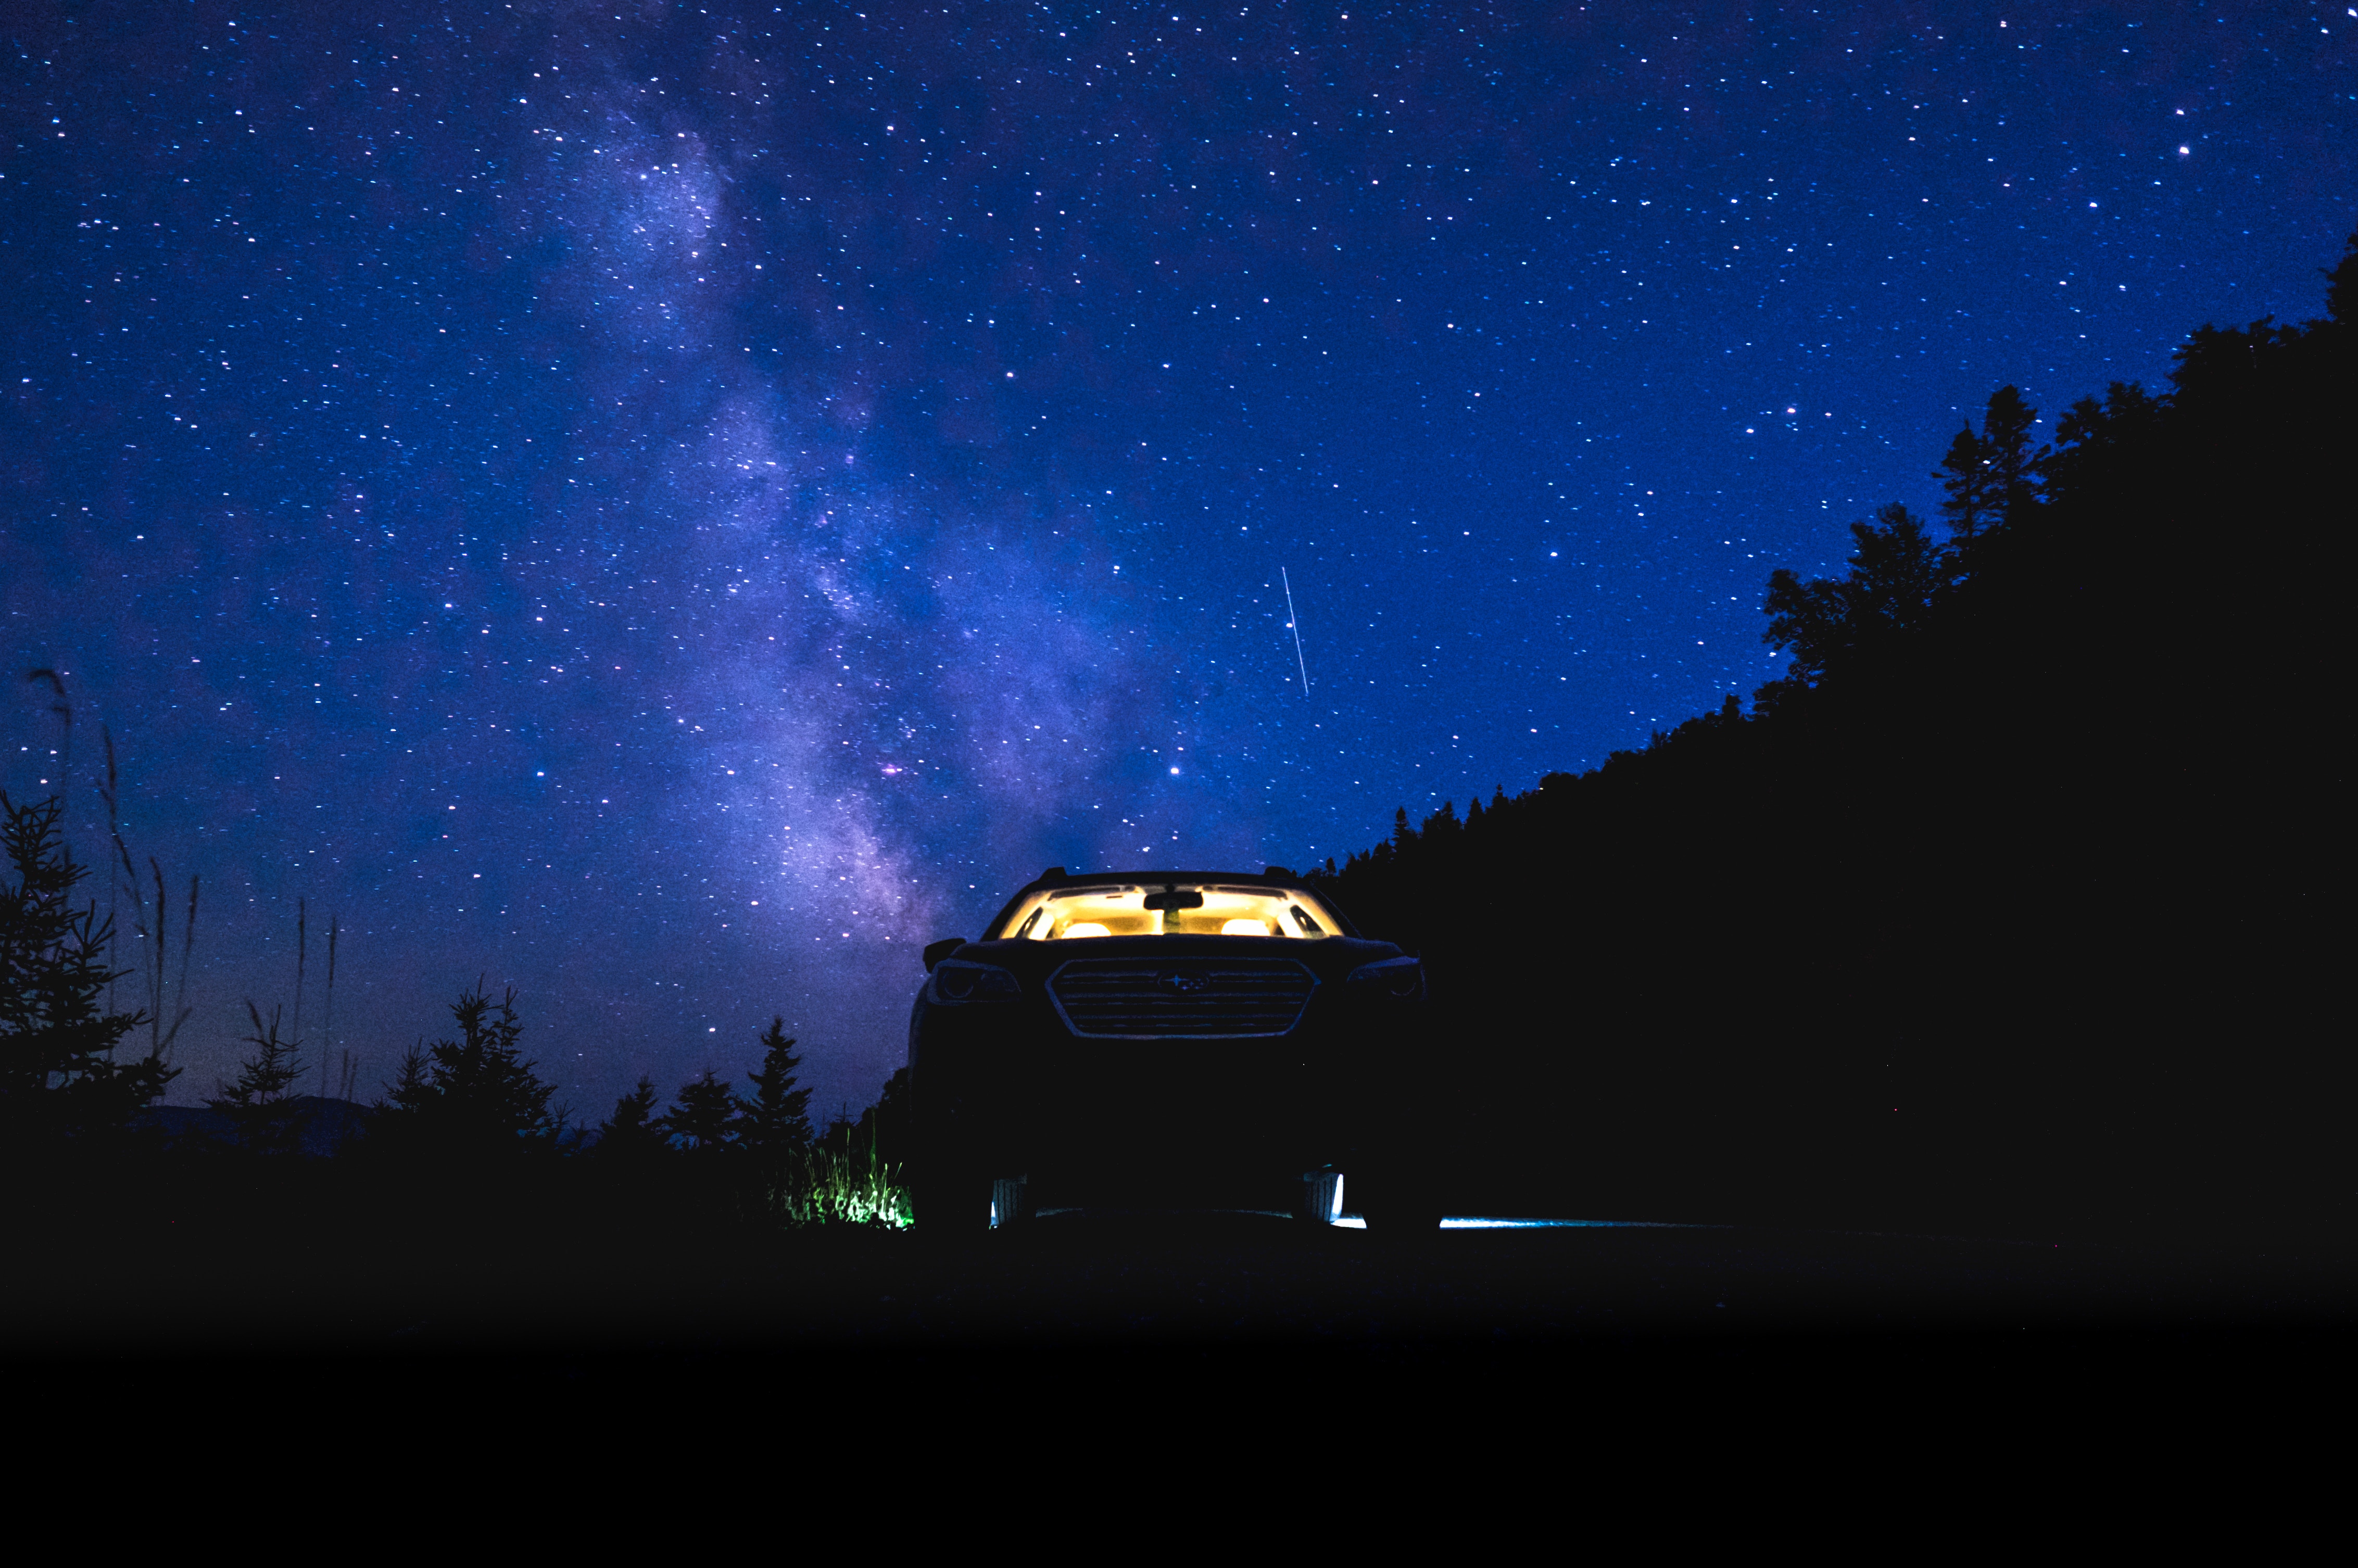 Скачать обои бесплатно Природа, Ночь, Звездное Небо, Автомобиль картинка на рабочий стол ПК